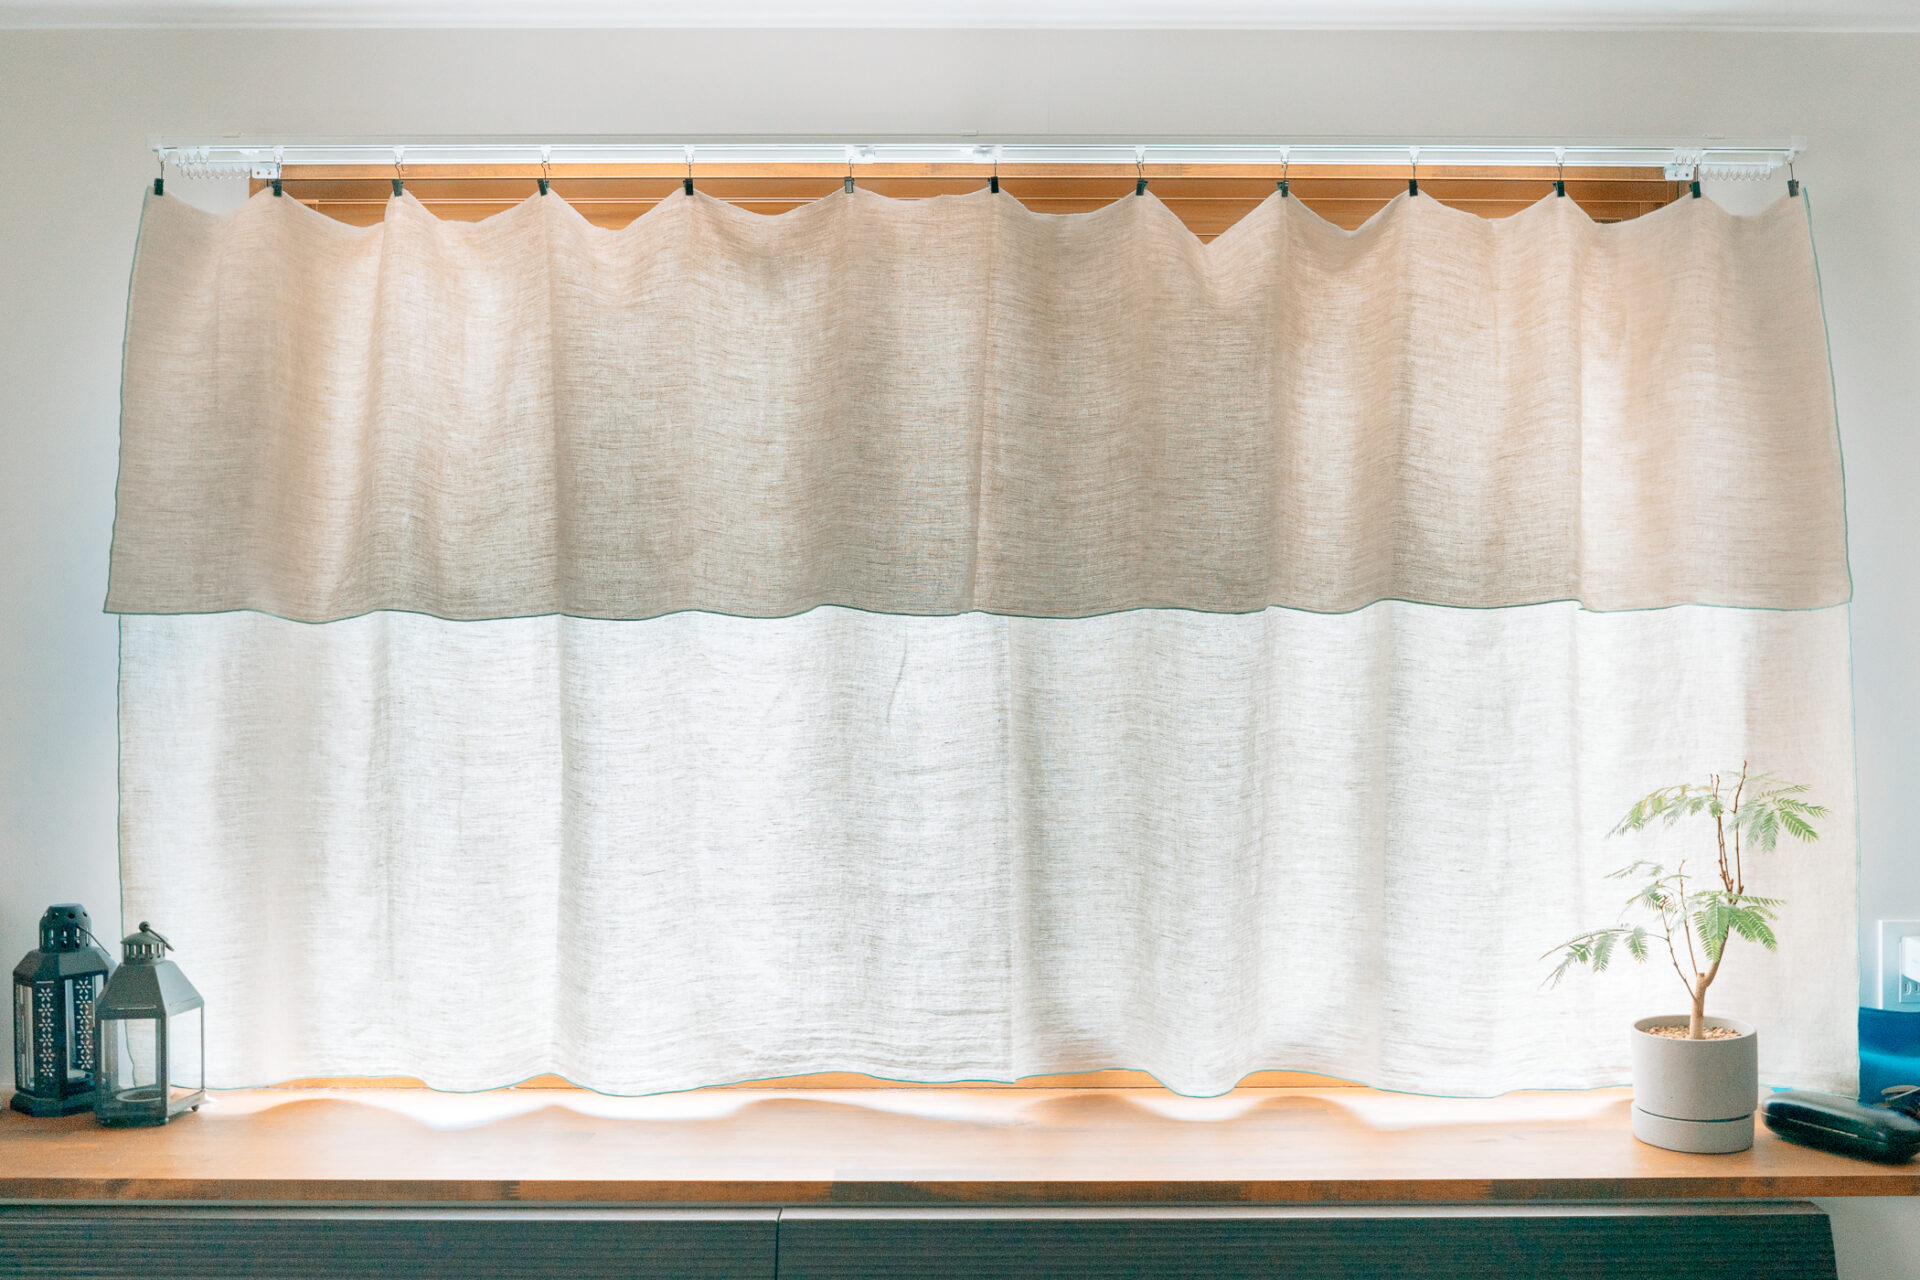 腰高窓カーテン、クリップカーテン、KINU、ieno textile